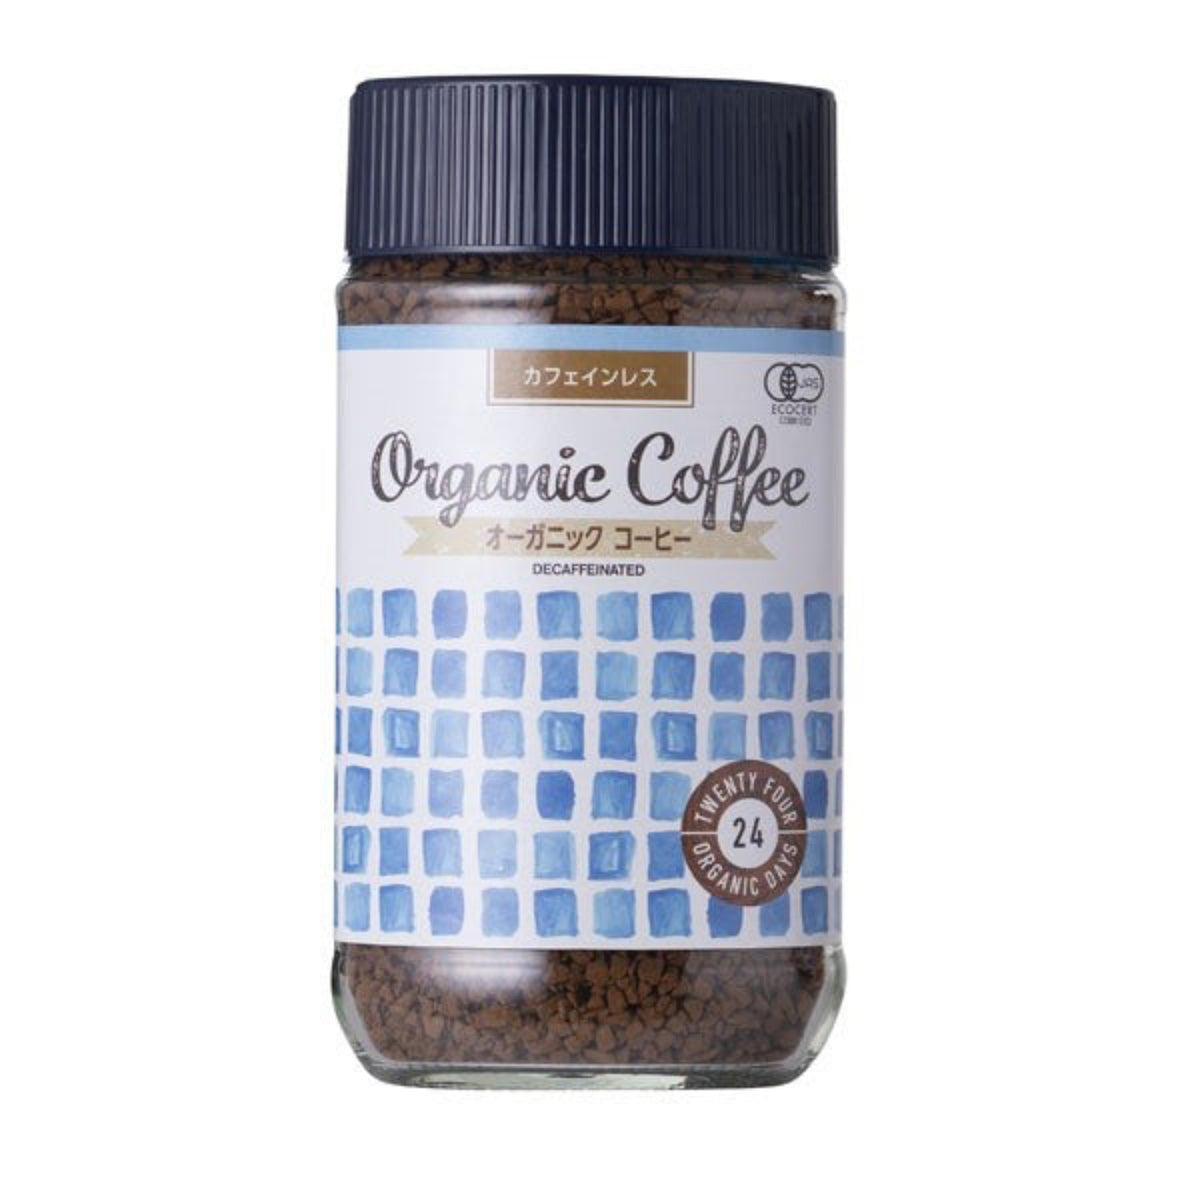 【24 ORGANIC DAYS】インスタントコーヒー(カフェインレス)